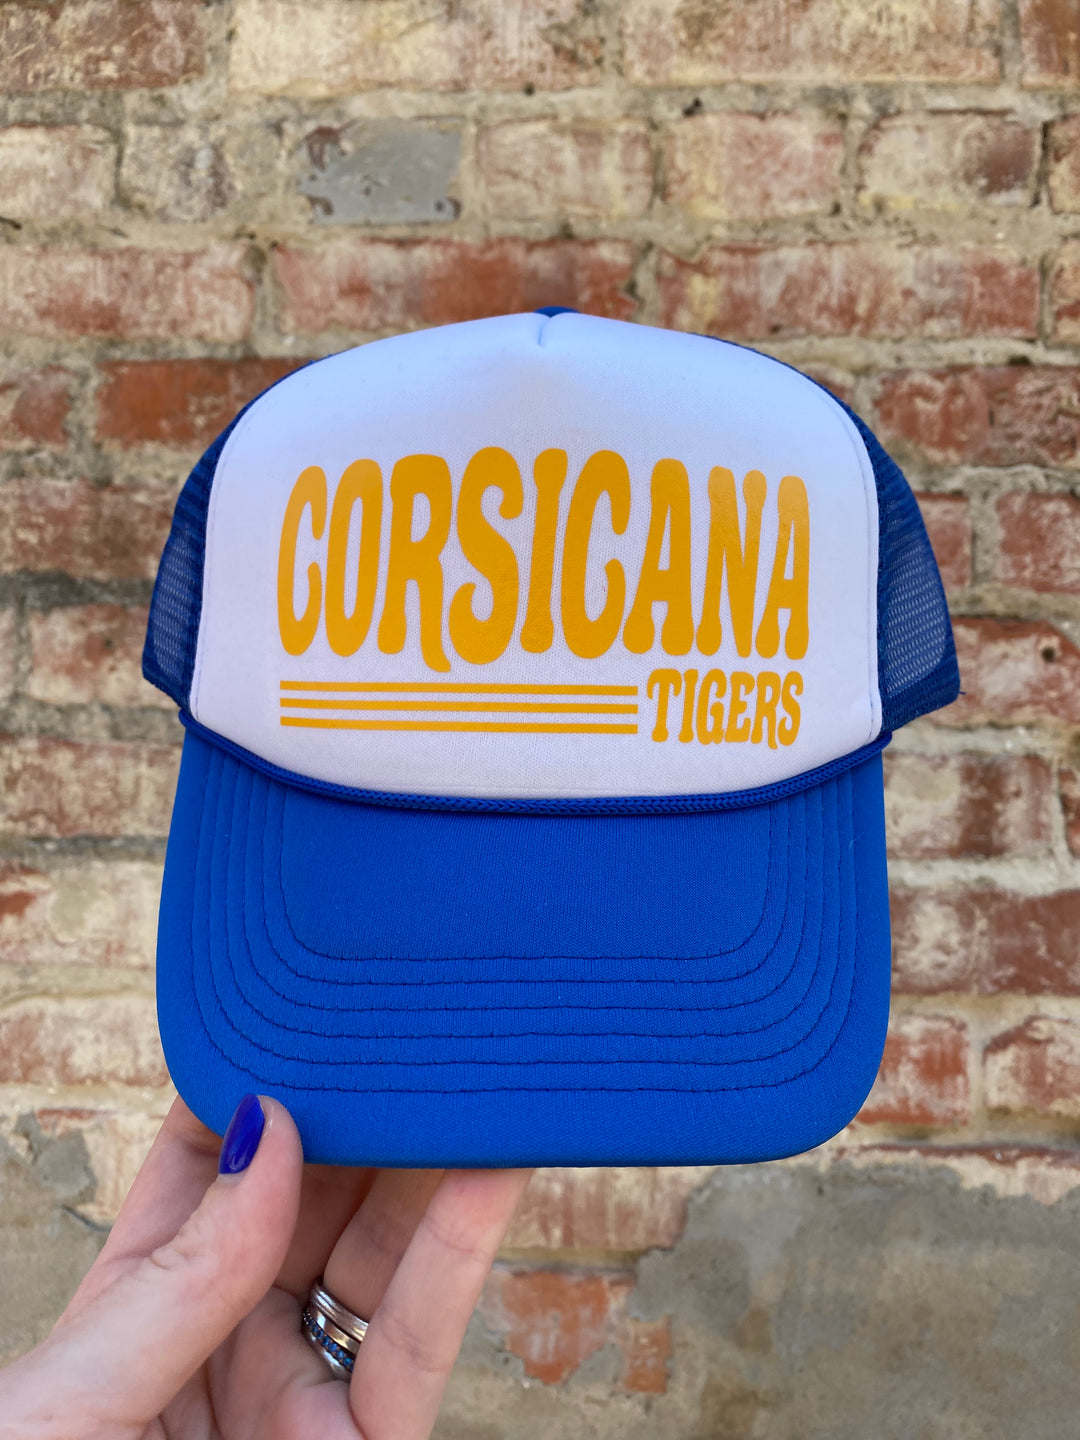 Corsicana Tigers Trucker Hat